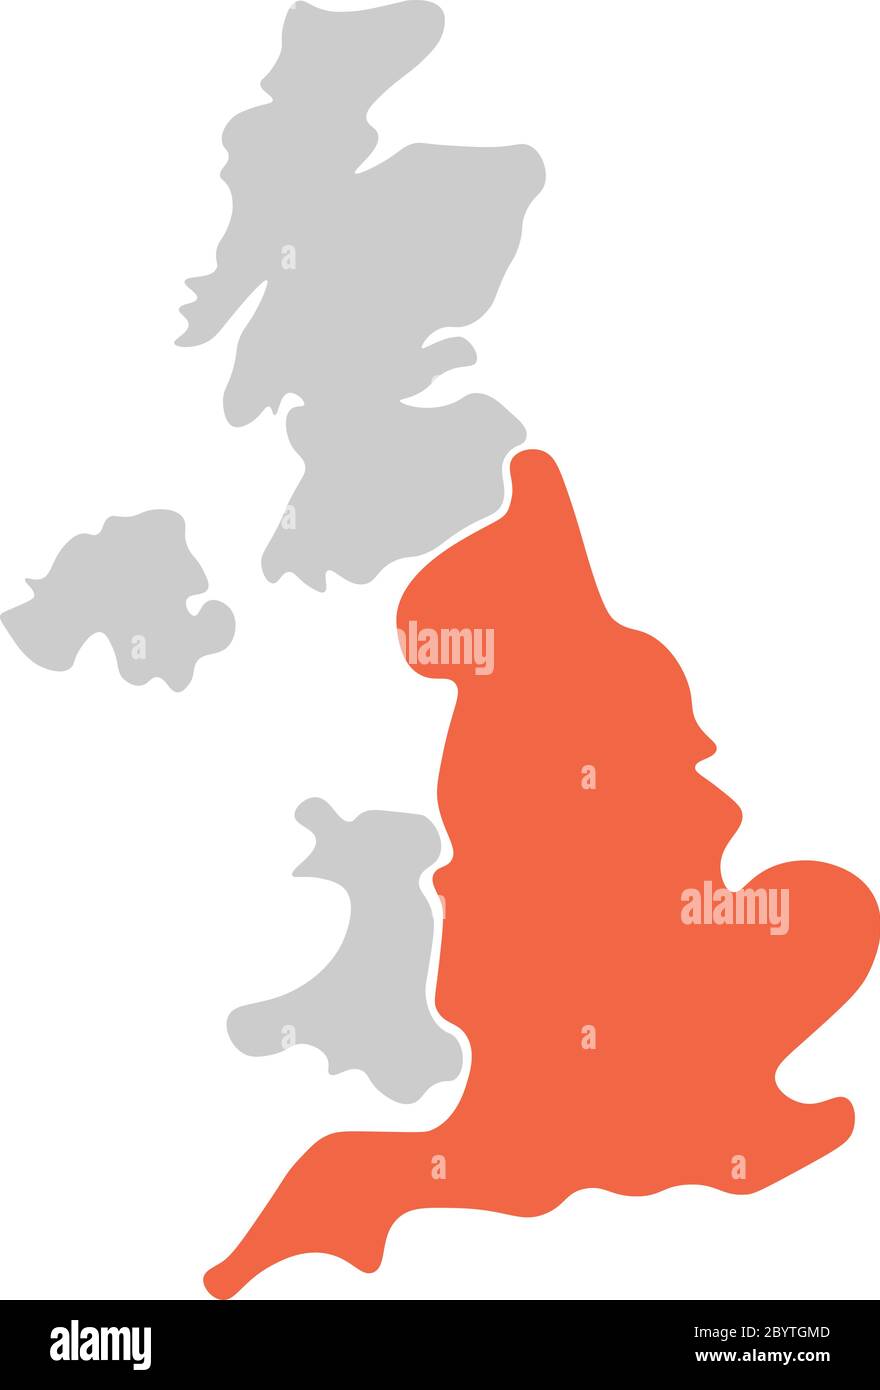 Mappa vuota semplificata disegnata a mano del Regno Unito di Gran Bretagna e Irlanda del Nord, Regno Unito. Diviso in quattro paesi con l'Inghilterra evidenziata in rosso. Semplice illustrazione vettoriale piatta. Illustrazione Vettoriale